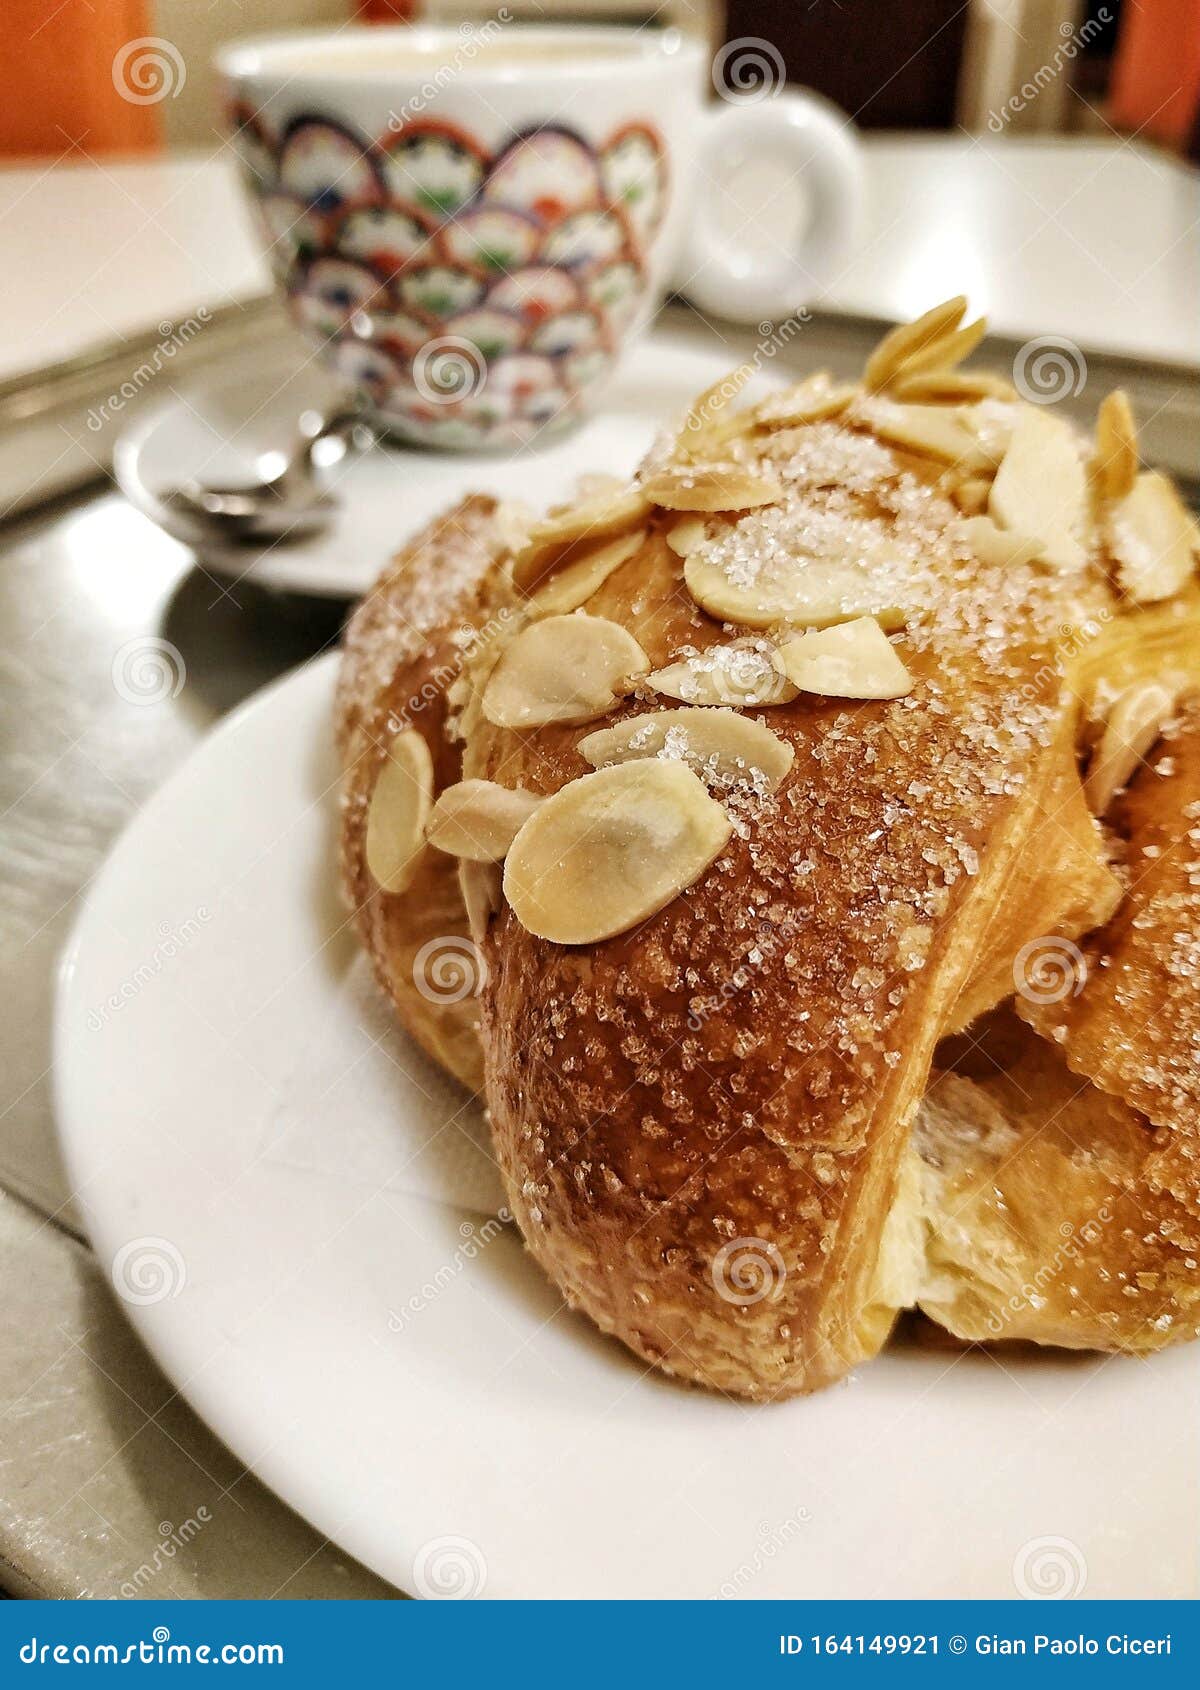 italian breakfast: details of a broche